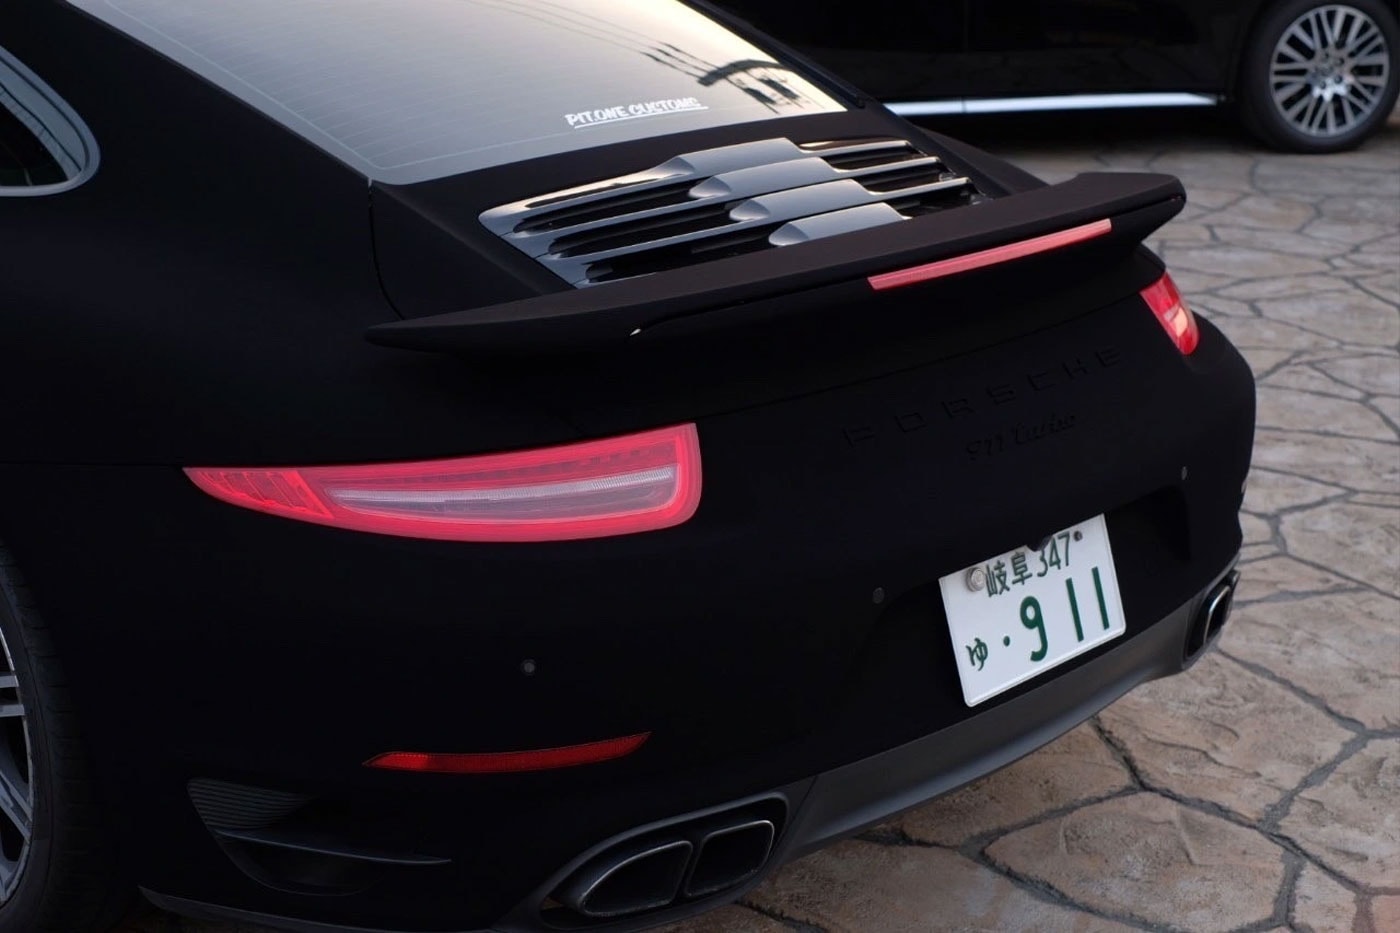 日本企業開発の“世界一黒い塗料”で仕上げられたポルシェ 911 が話題に Pit One Covers a Porsche 911 in the World's Blackest Paint koyo orient auto shop darkest car video vantablack purchase test info